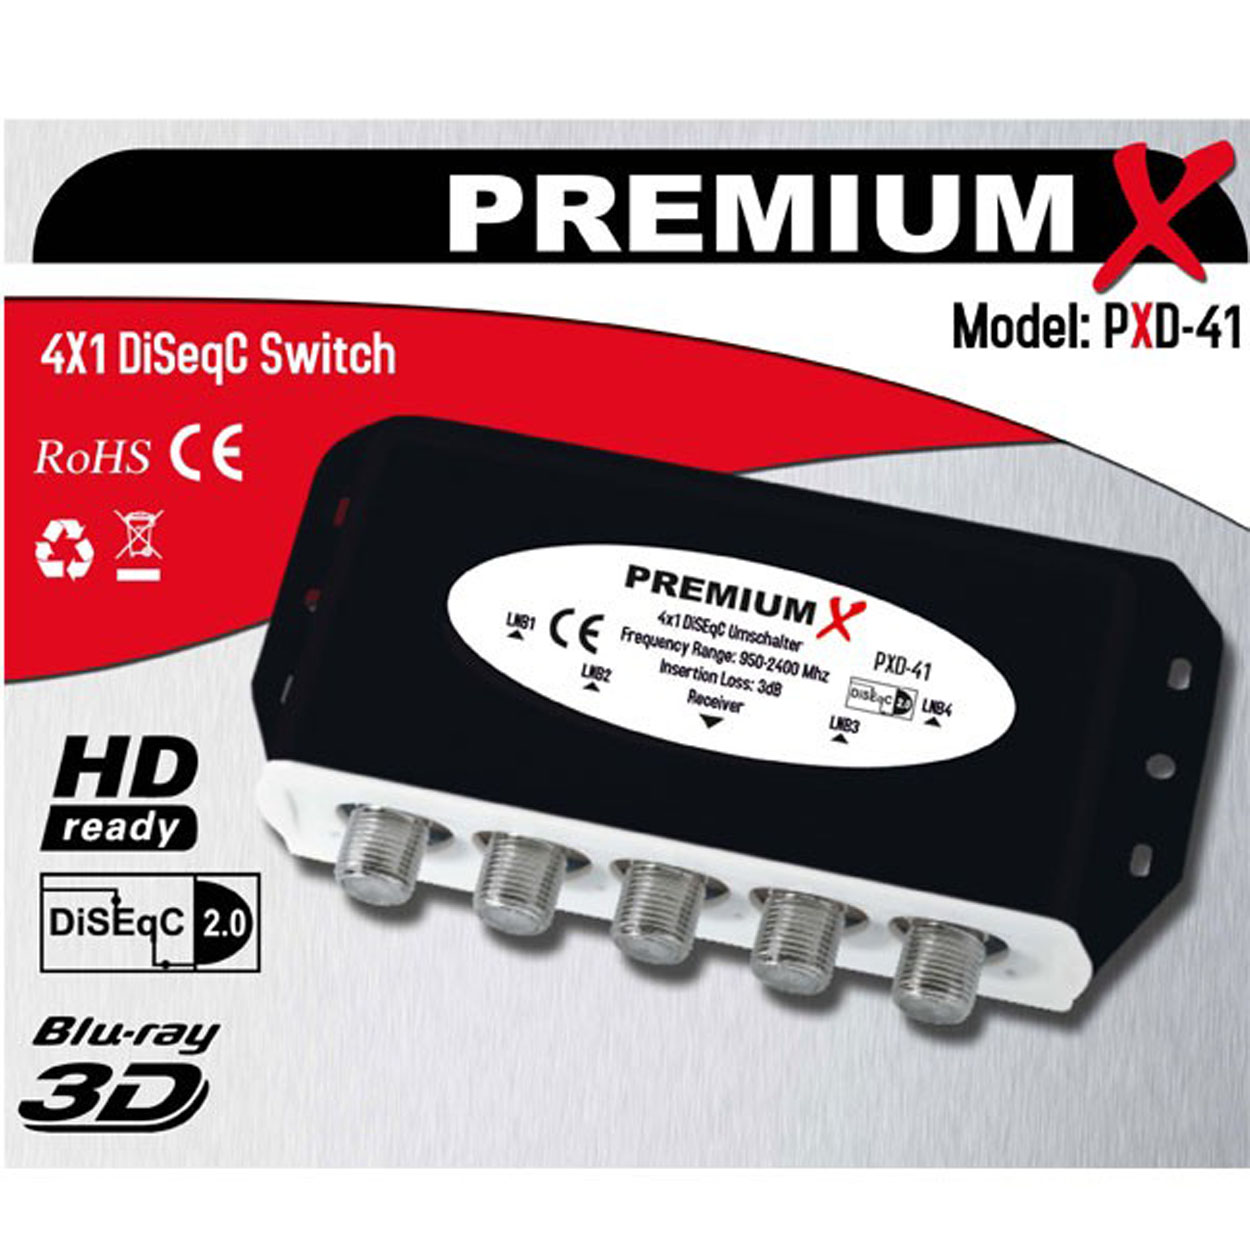 Umschalter Schalter PREMIUMX Wetterschutzgehäuse PXD-41 FullHD DiseqC Switch Sat-Multischalter 4K HDTV DVB-S2 SAT 4x 4/1 2.0